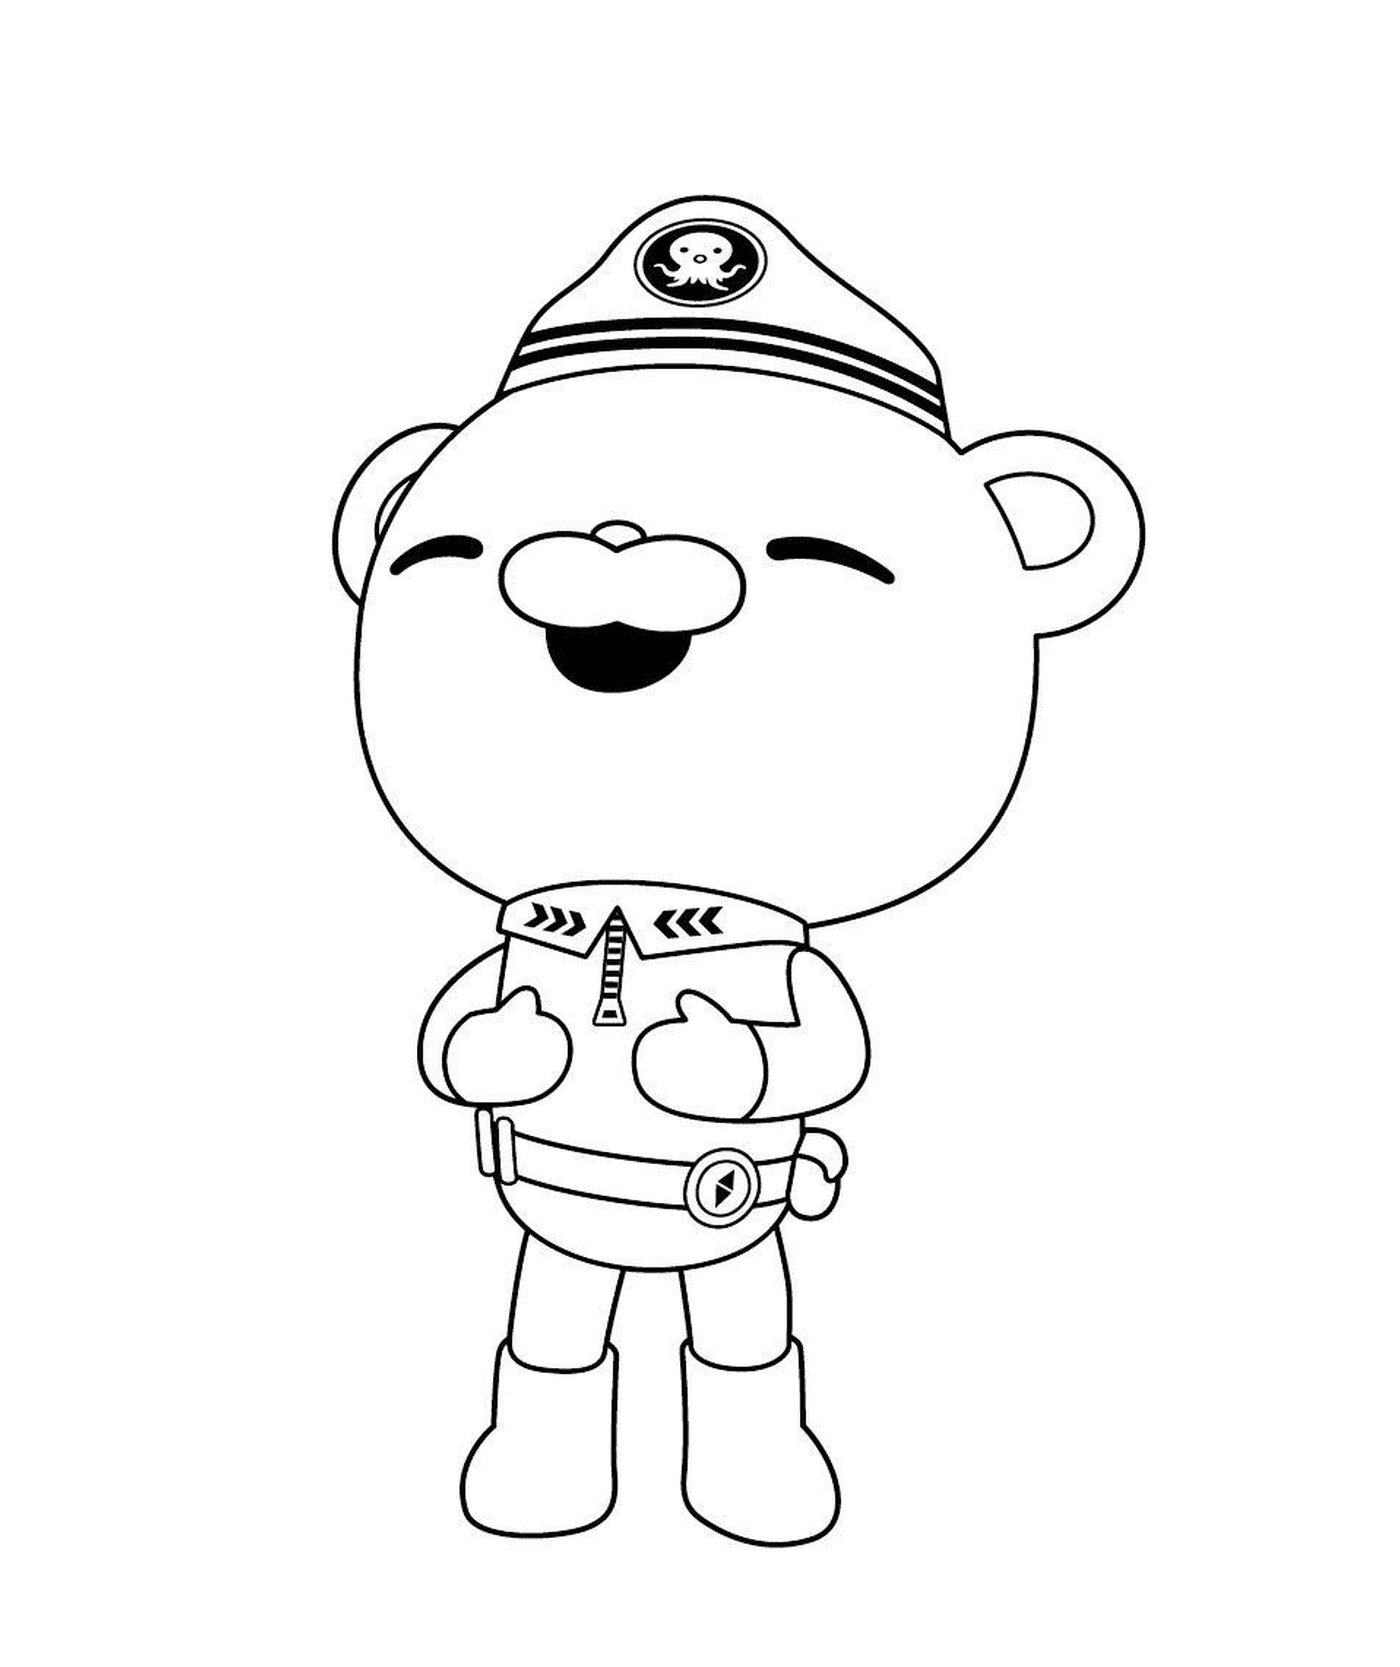   Capitaine Barnacles des octonauts, un ours dans son uniforme 